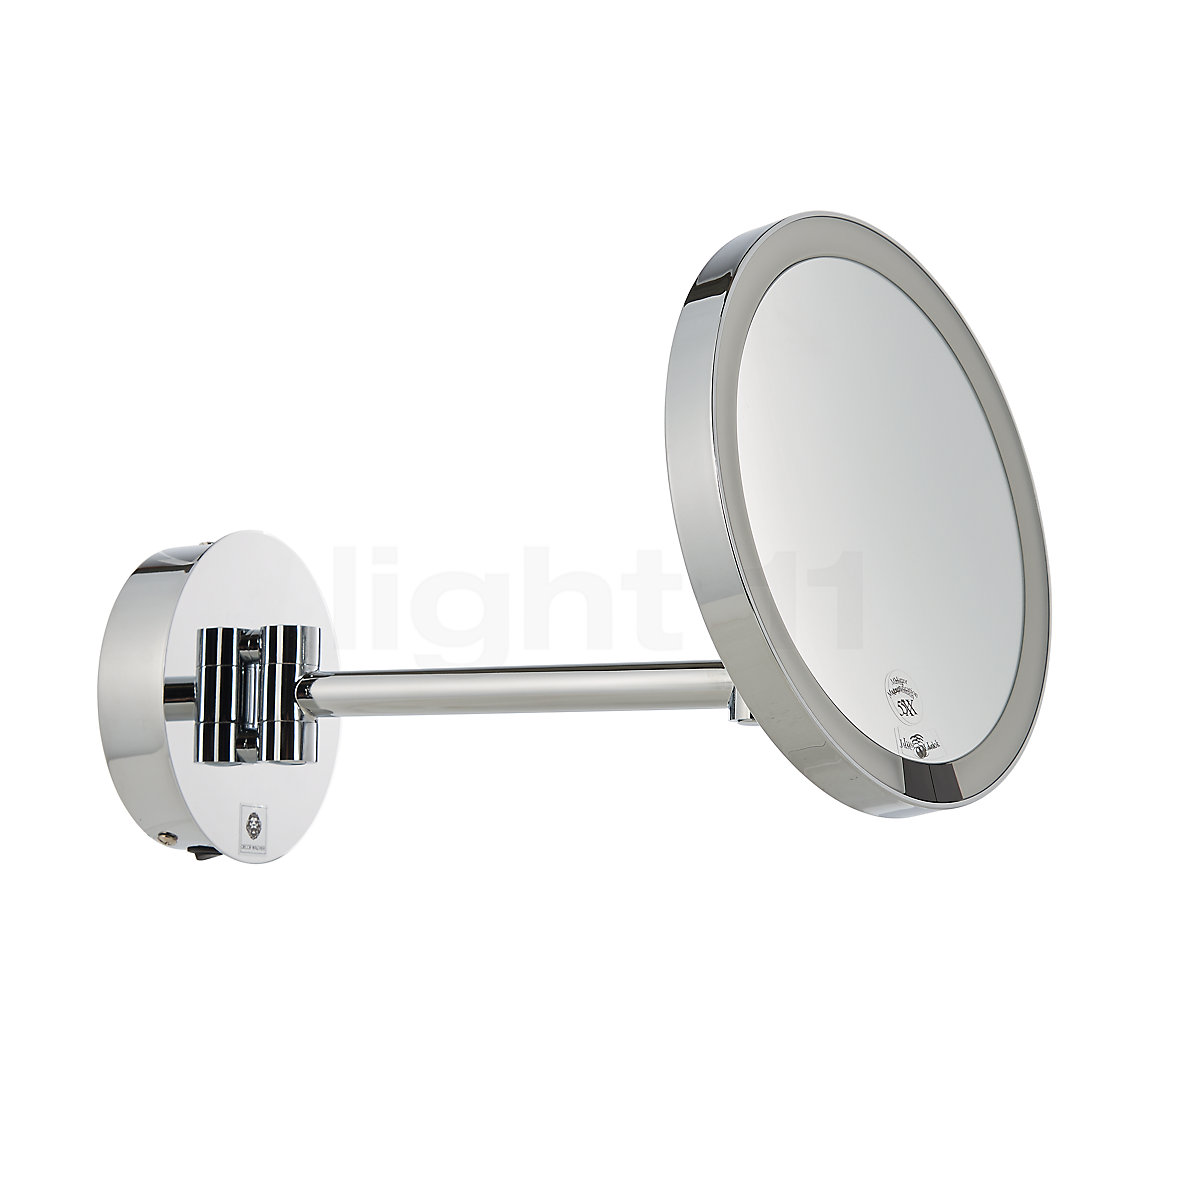 Decor Walther Just Look Specchio luminoso da parete per trucco LED